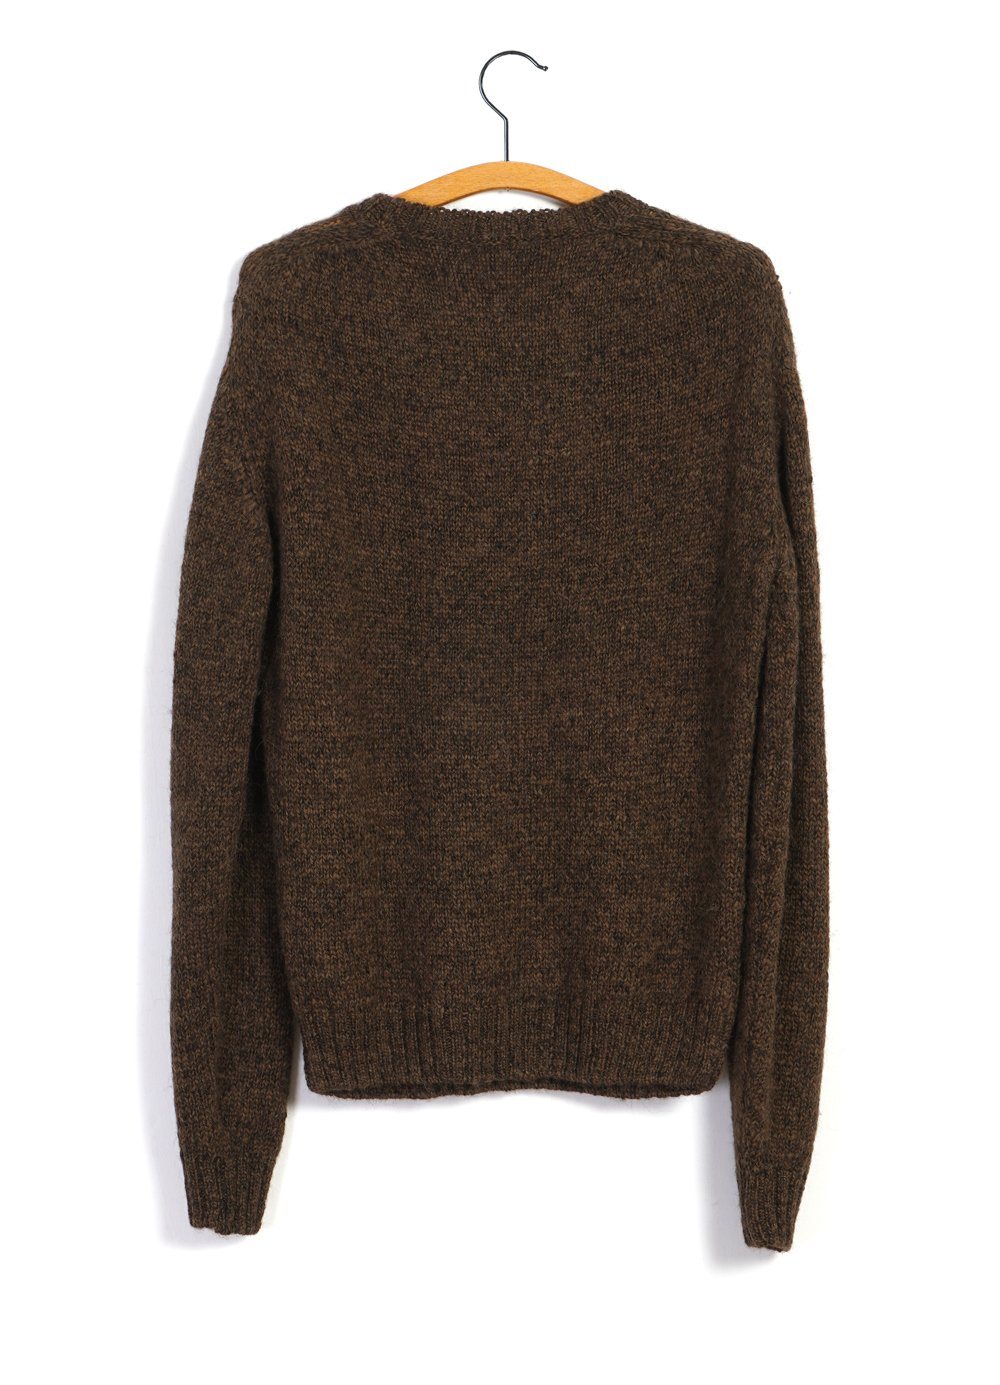 HANSEN GARMENTS - MATTIAS | Knitted Crew Neck Sweater | Tobacco - HANSEN Garments